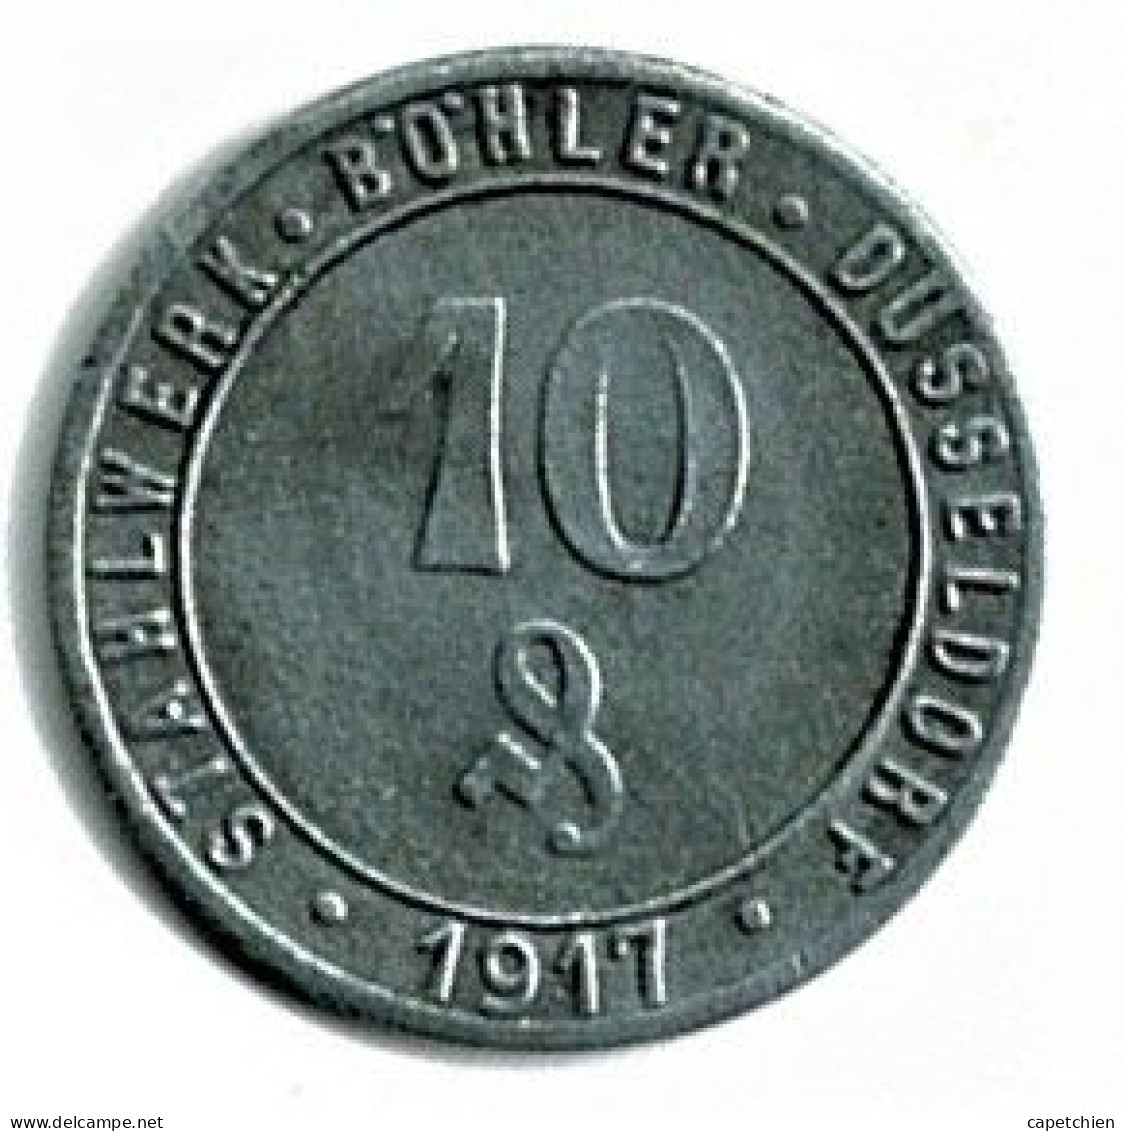 ALLEMAGNE / NOTGELD / STAHL WERK BÖHLER DÜSSELDORF / 50 PFG../ 1917 / ZINC / 22  Mm / ETAT SUPERBE / 3352.1 - Notgeld